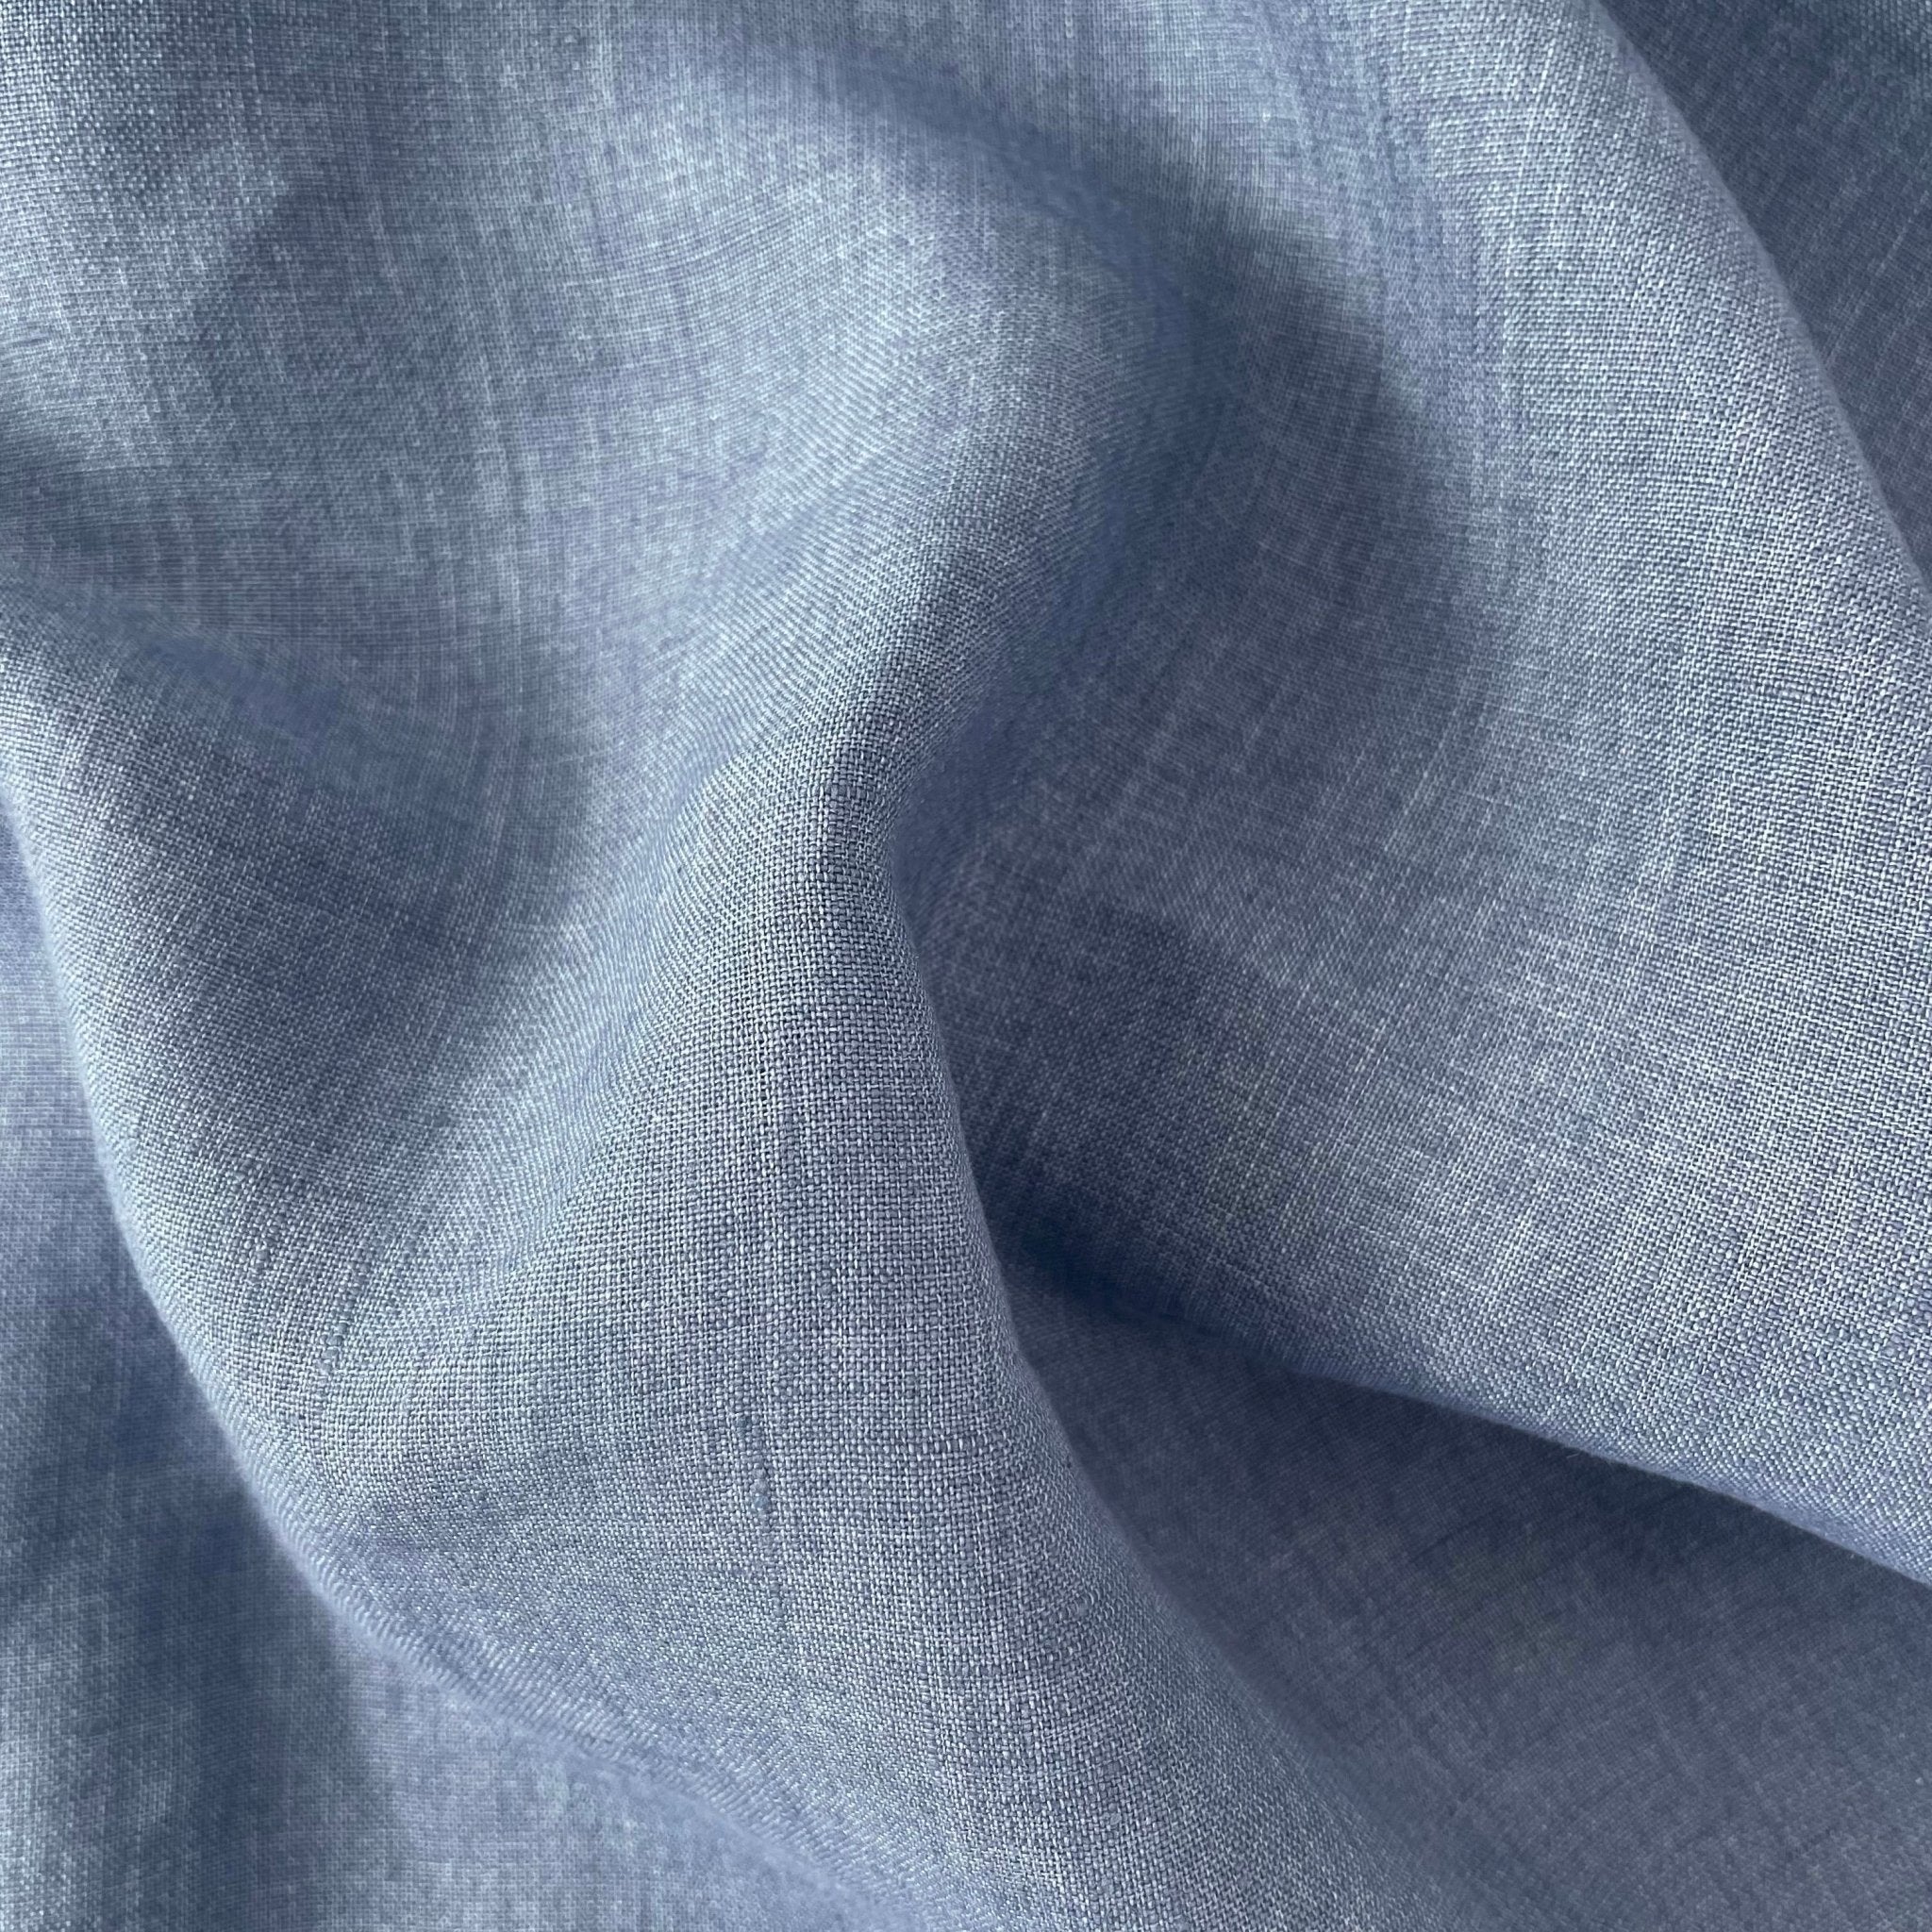 Linen Fabric Medium Weight Soft Touch 14S 6220 6600 6366 7369 - The Linen Lab - Blue(light)